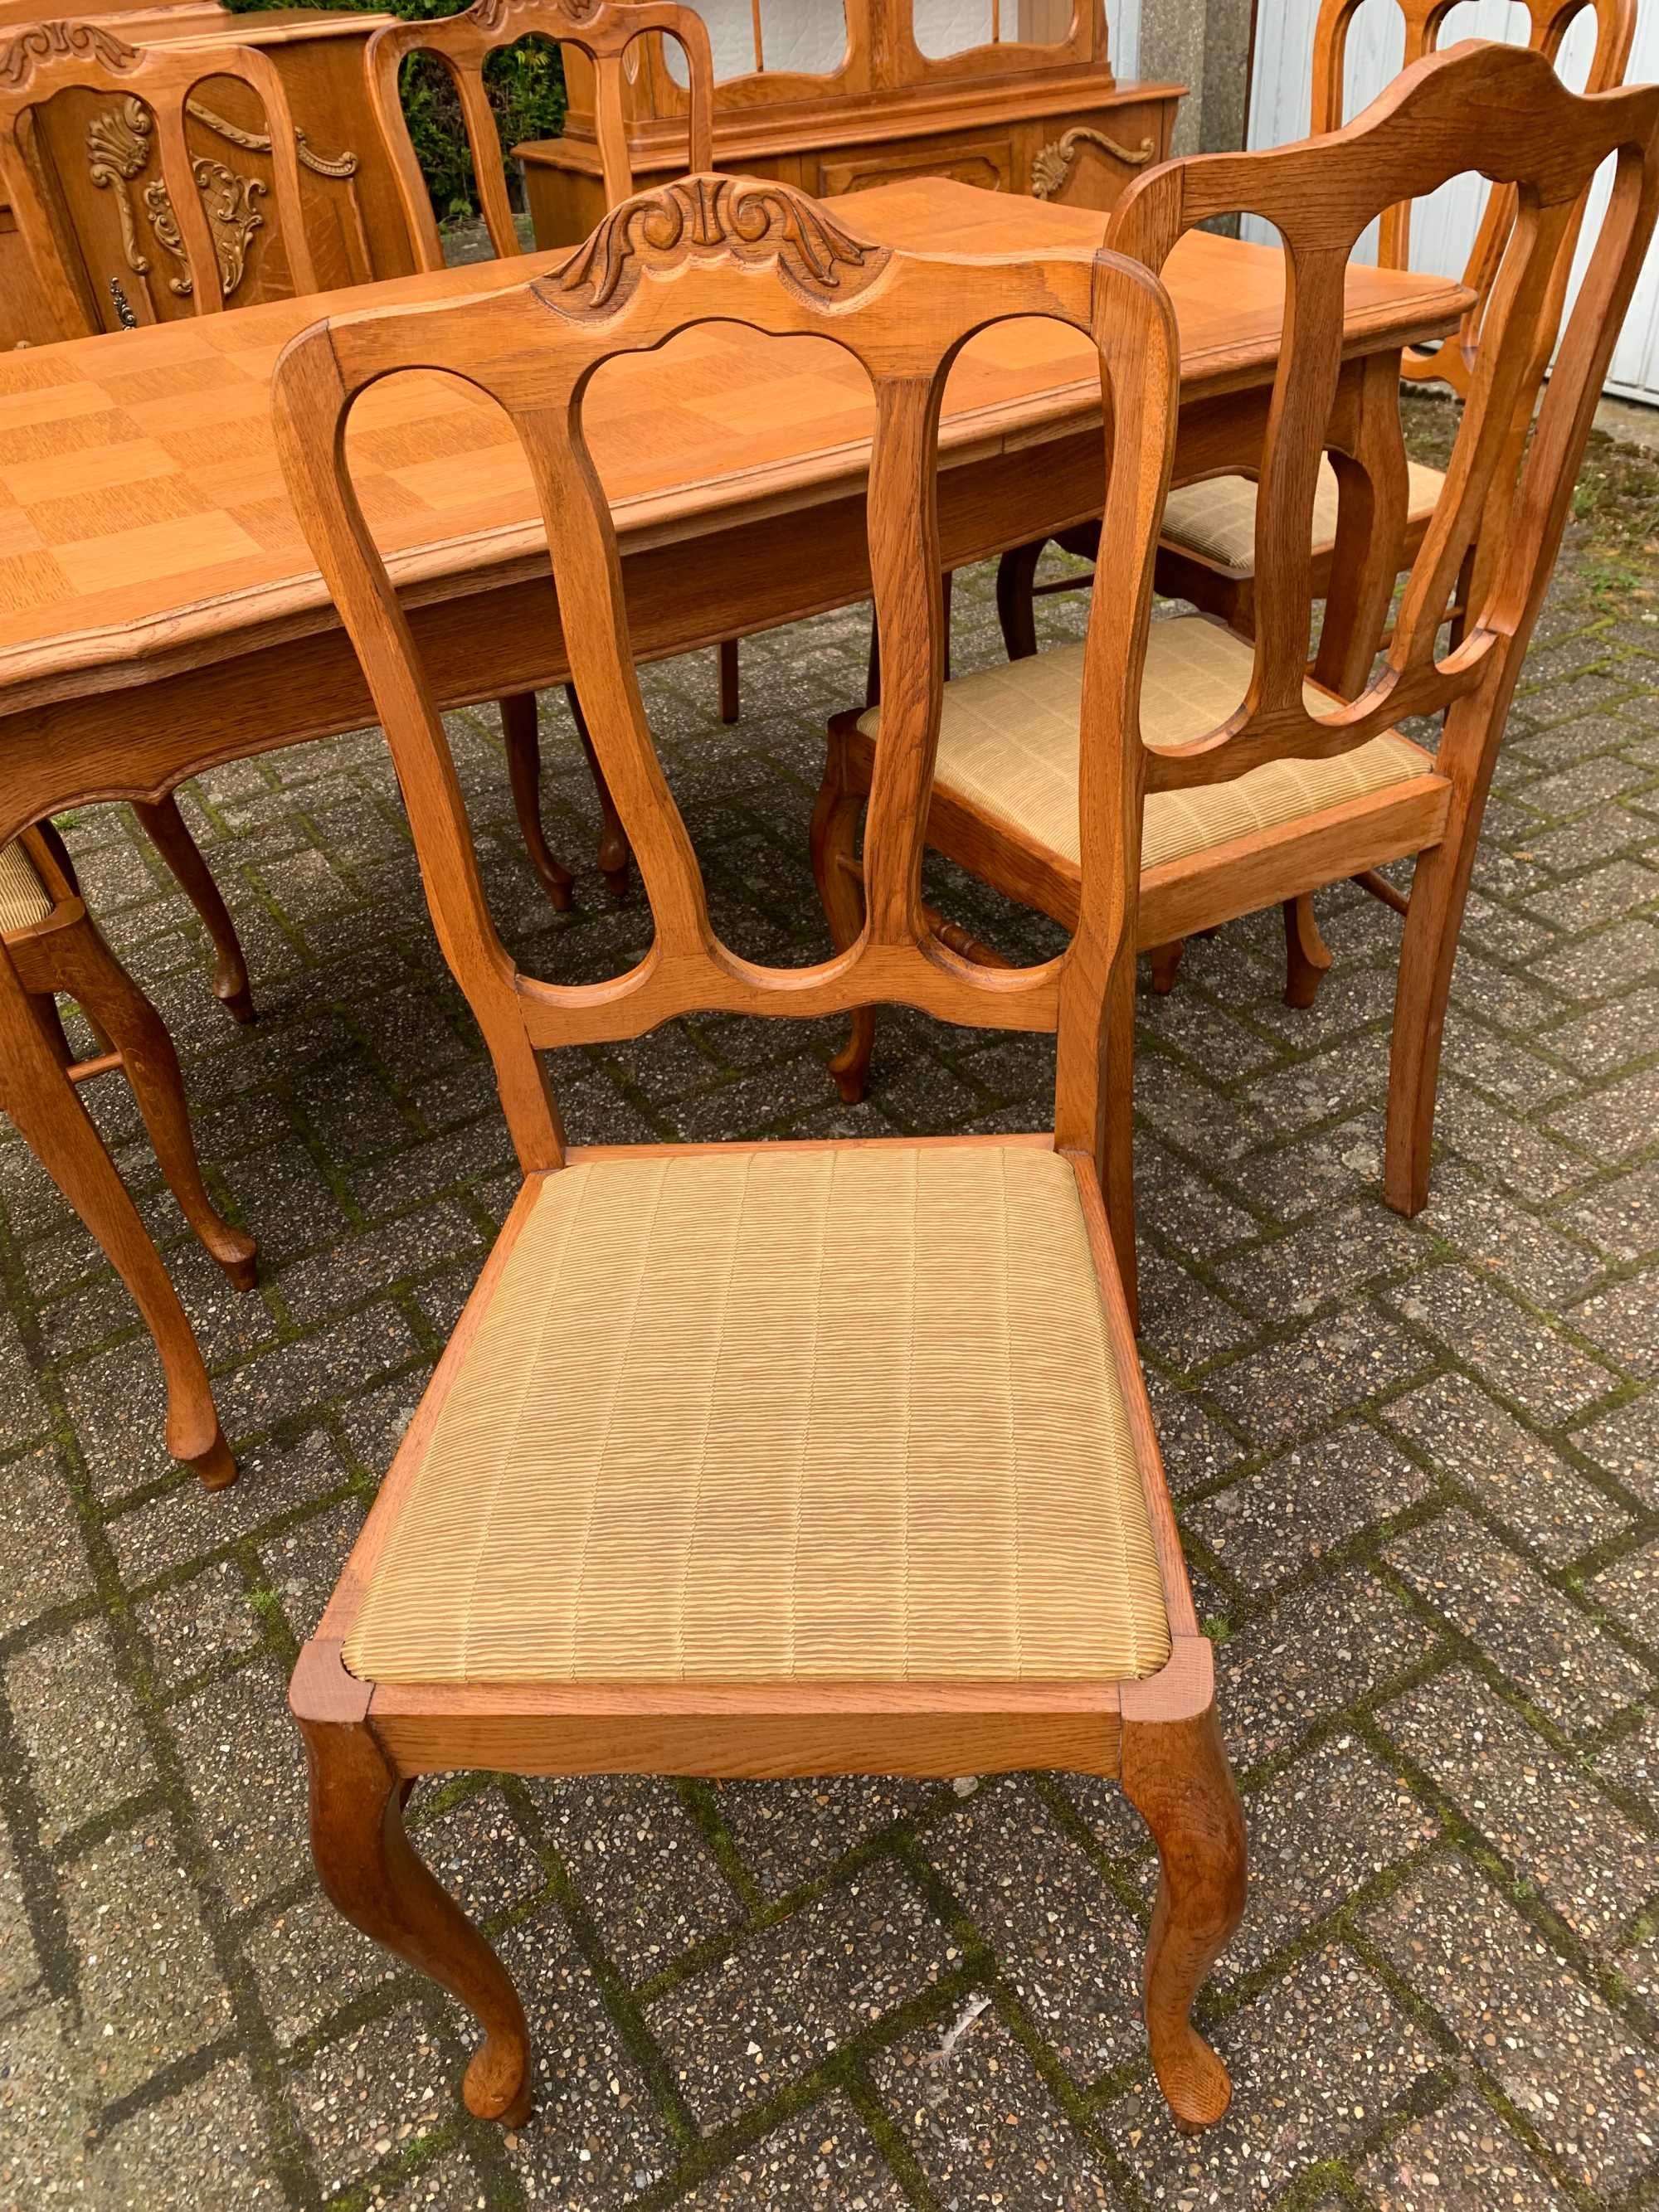 Rozkładany stół i 6 krzeseł w ludwikowskim stylu - Meble z Francji.